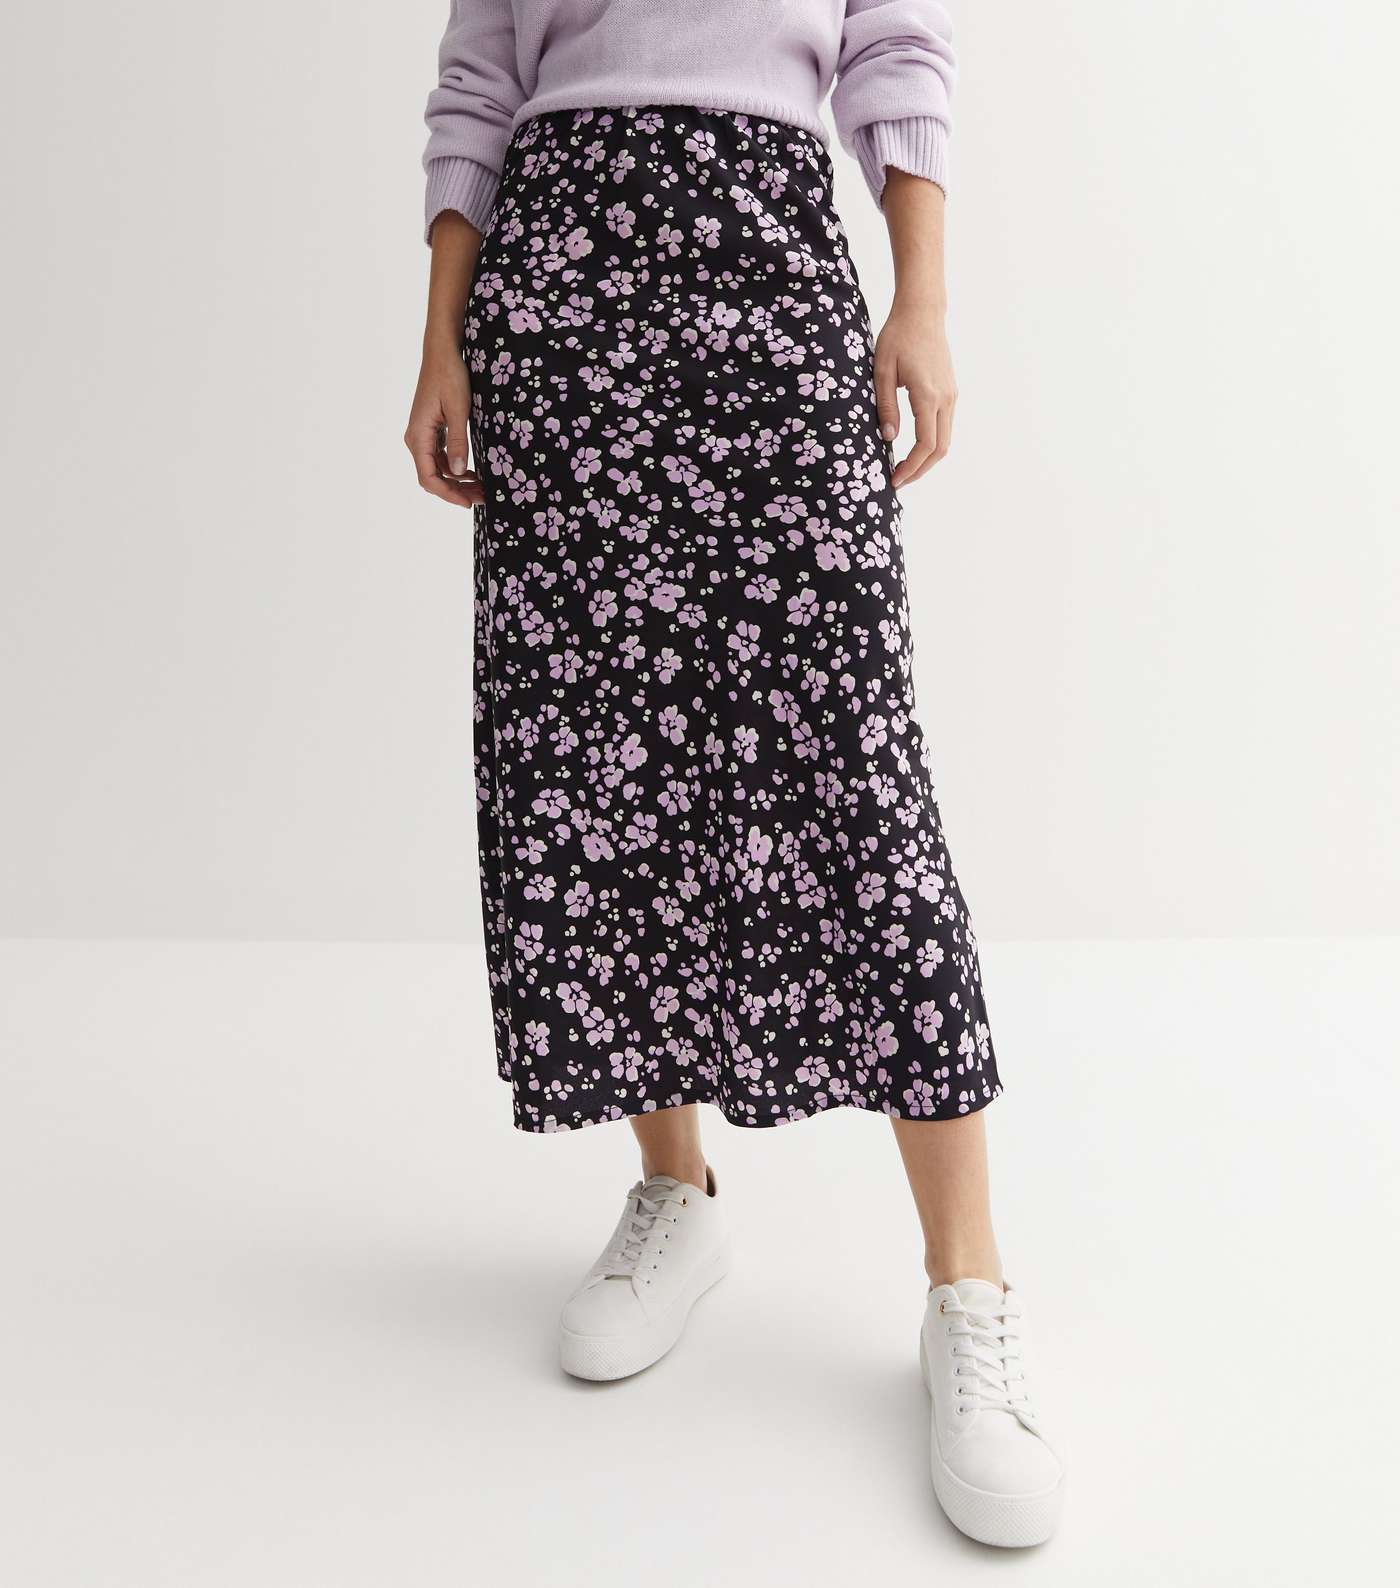 Black Floral Crepe Bias Cut Midi Skirt Image 2